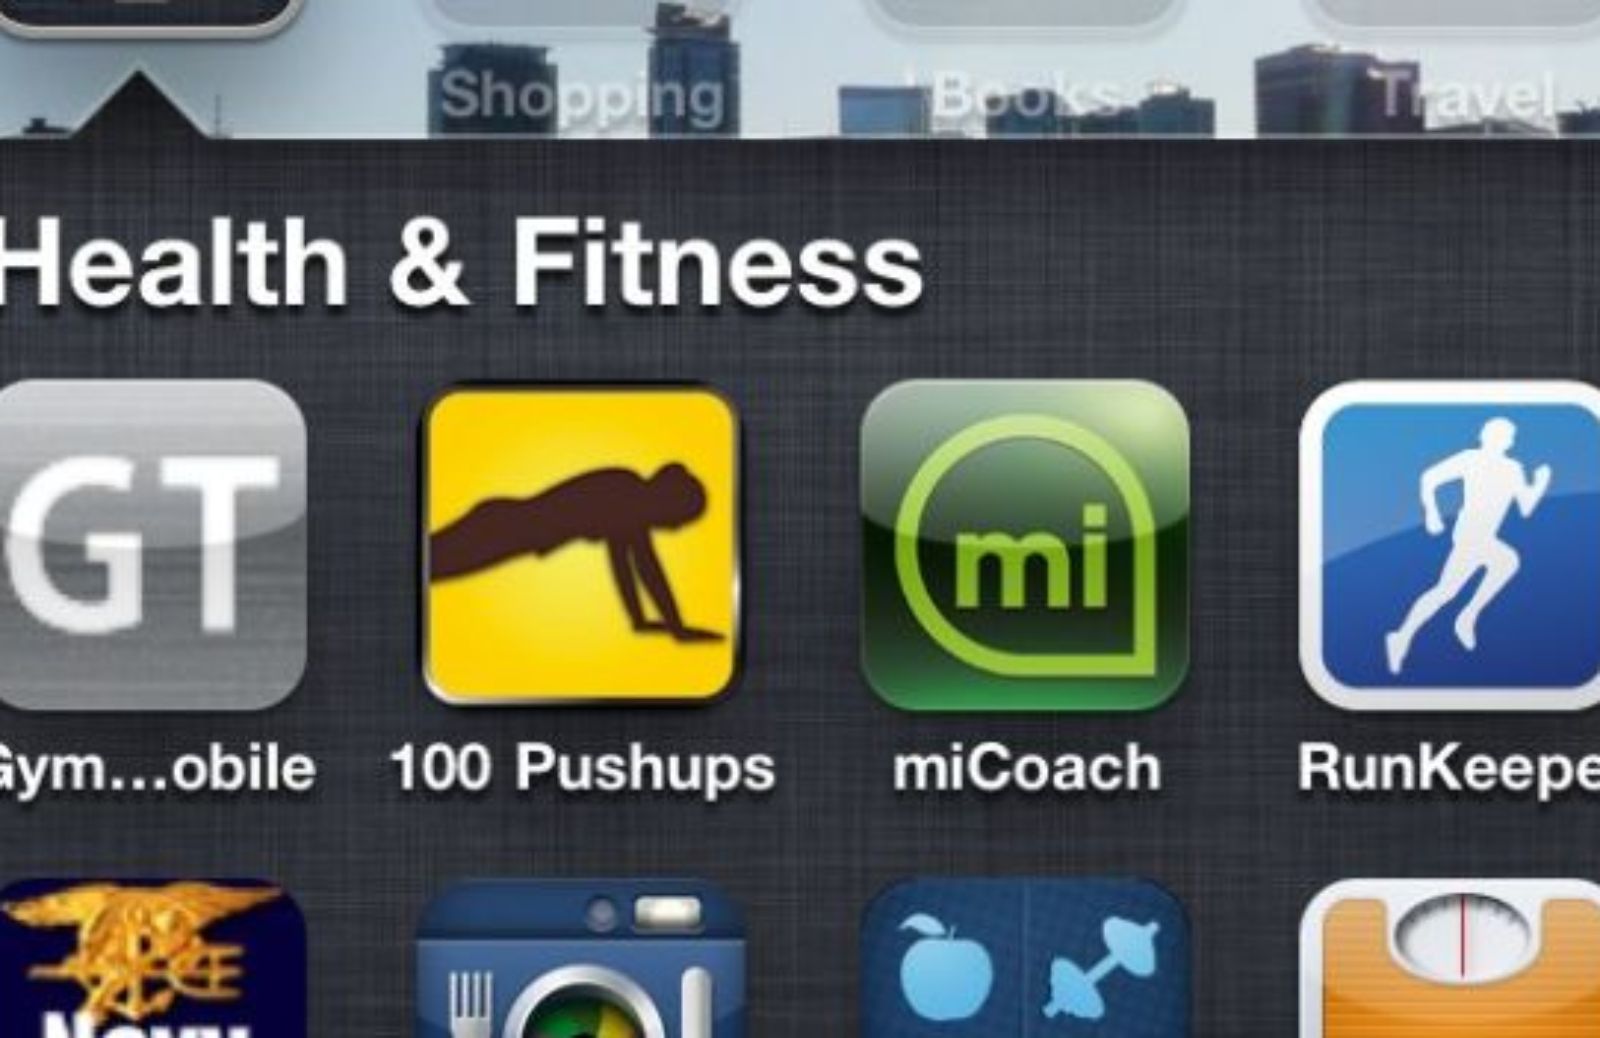 Come fare fitness con l'iPhone